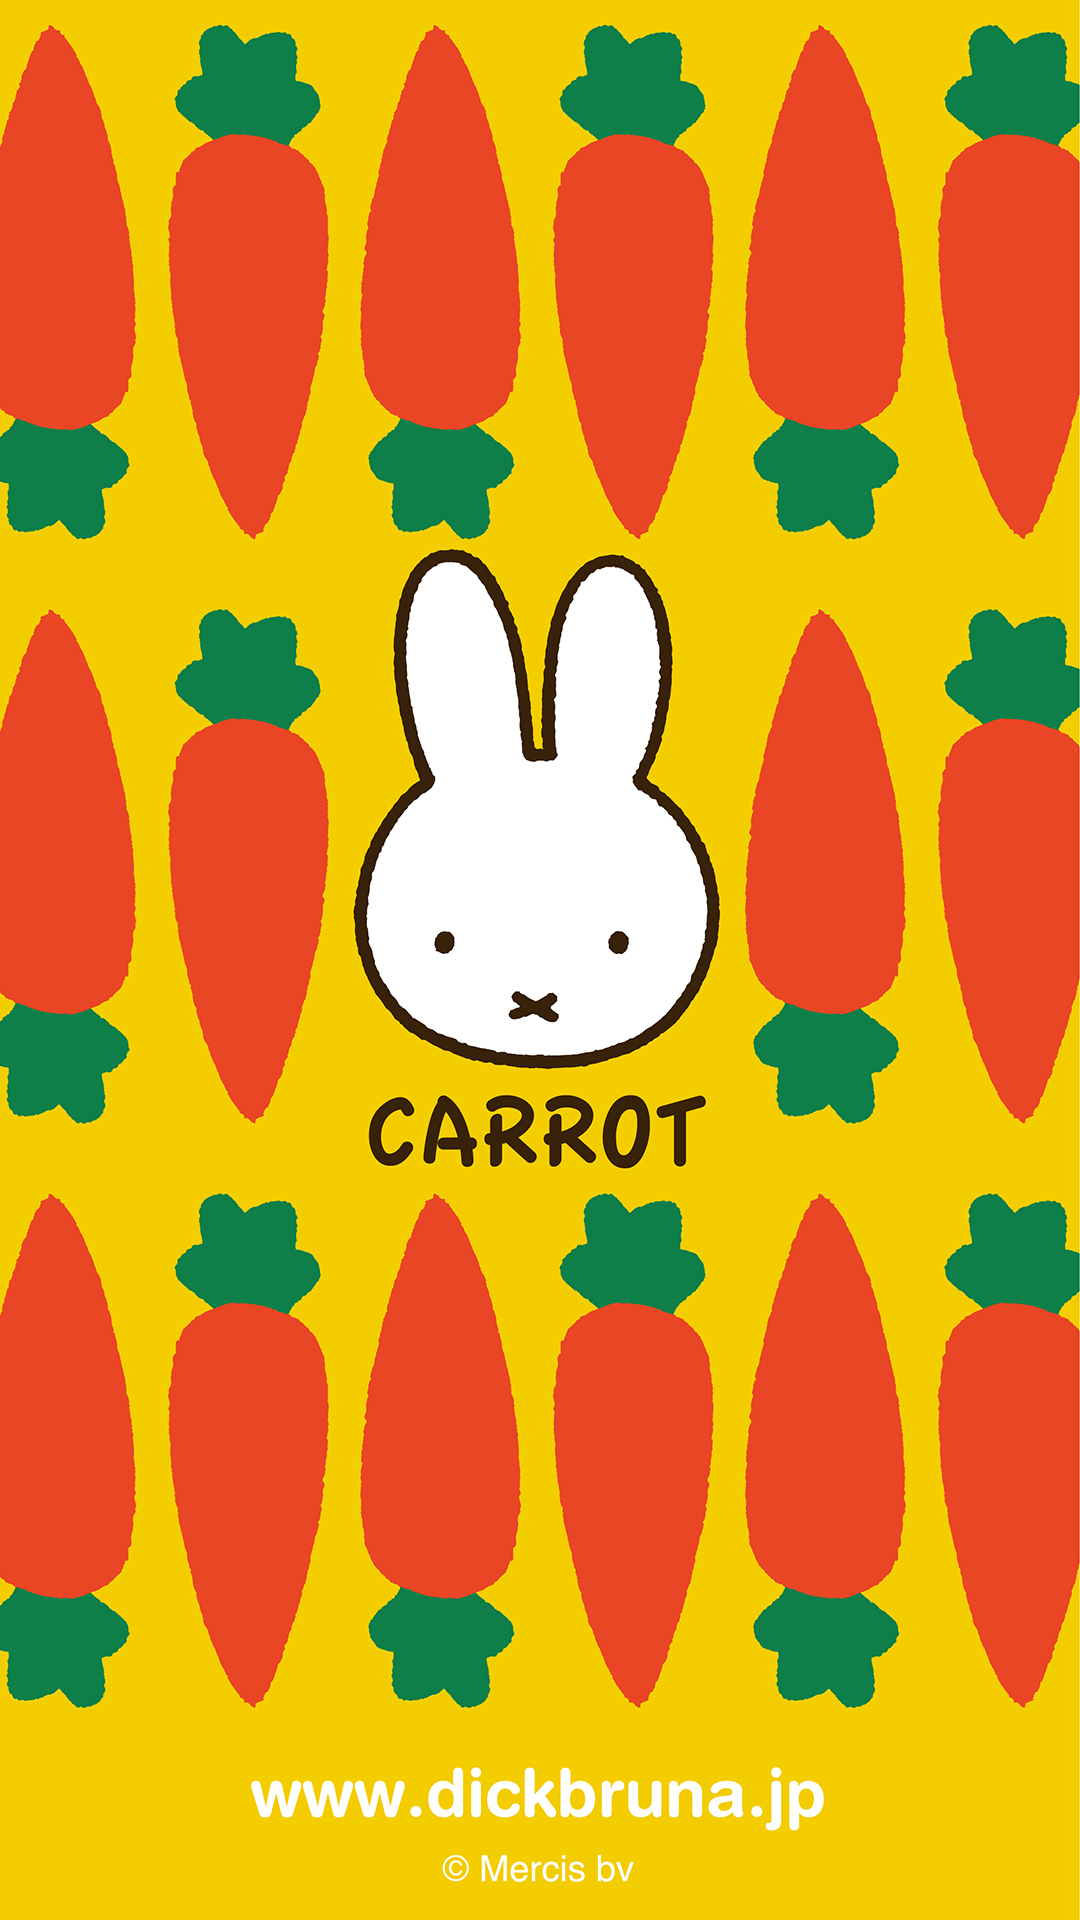 秋の新シリーズ Carrot デザインのpc スマートフォン用壁紙プレゼント トピックス Dickbruna Jp 日本のミッフィー情報サイト